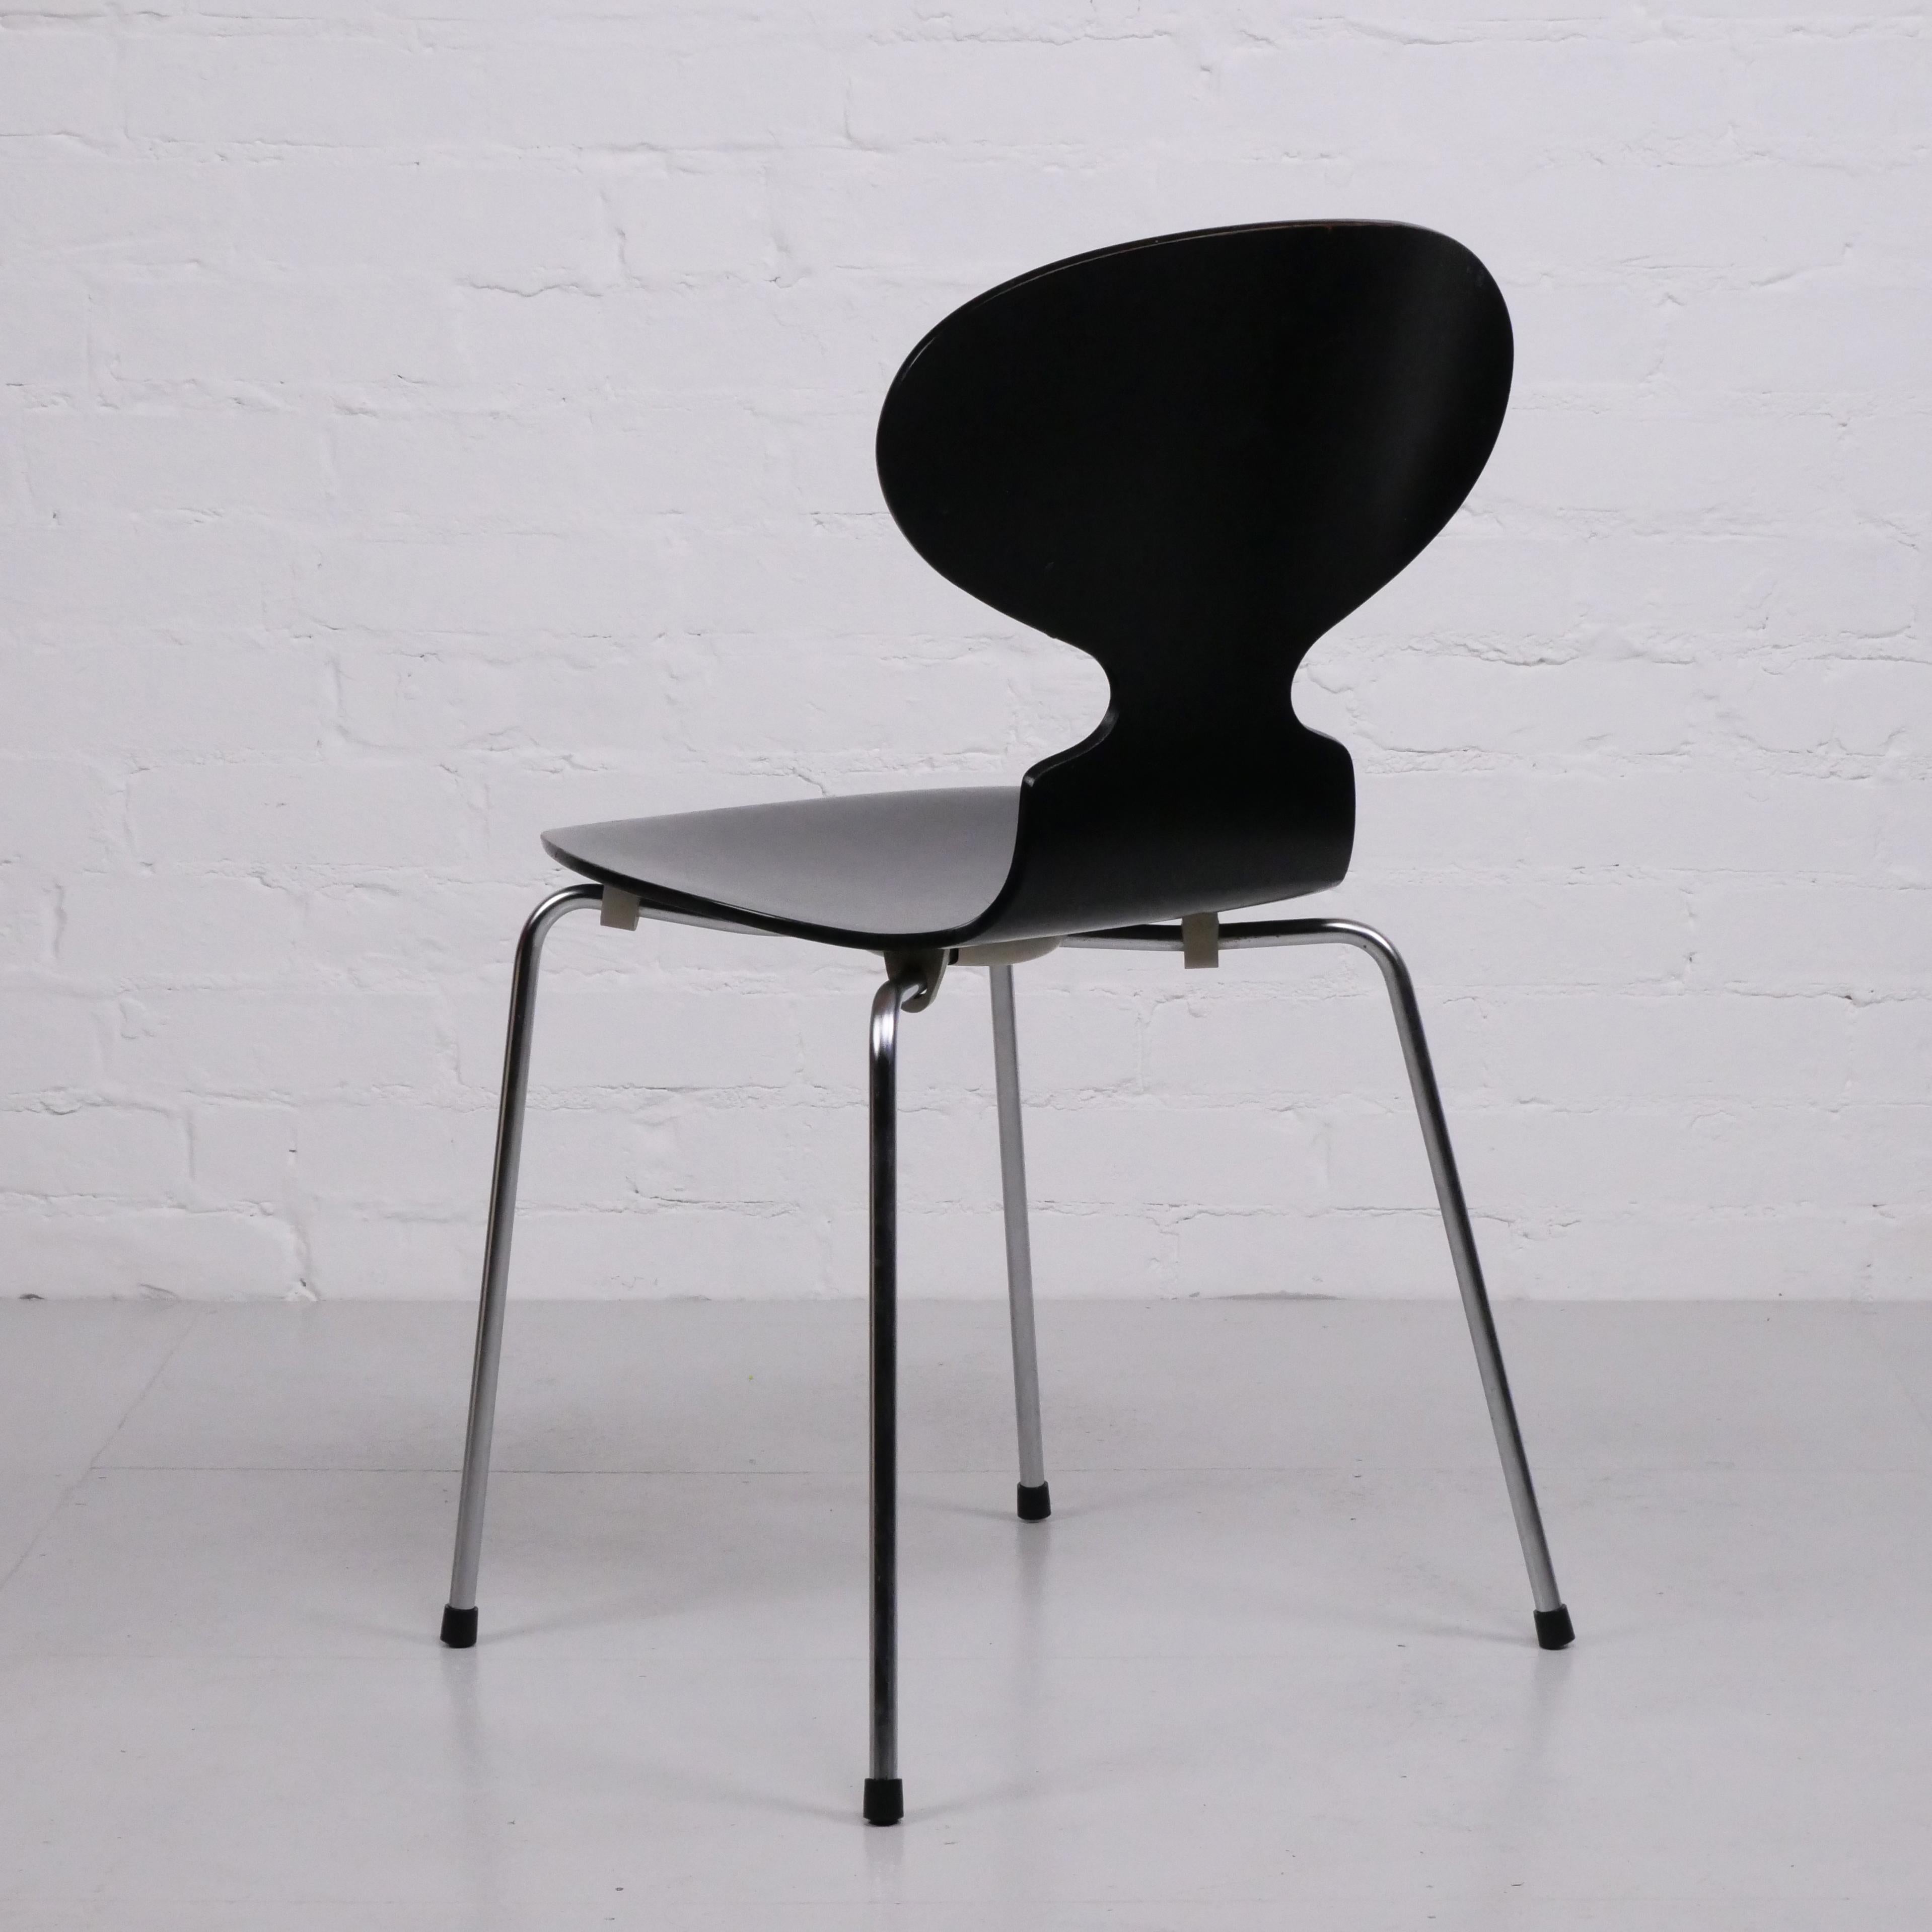 Contreplaqué Ensemble de 4 chaises 'Ant' par Arne Jacobsen pour Fritz Hansen, 2 ensembles anciens disponibles.